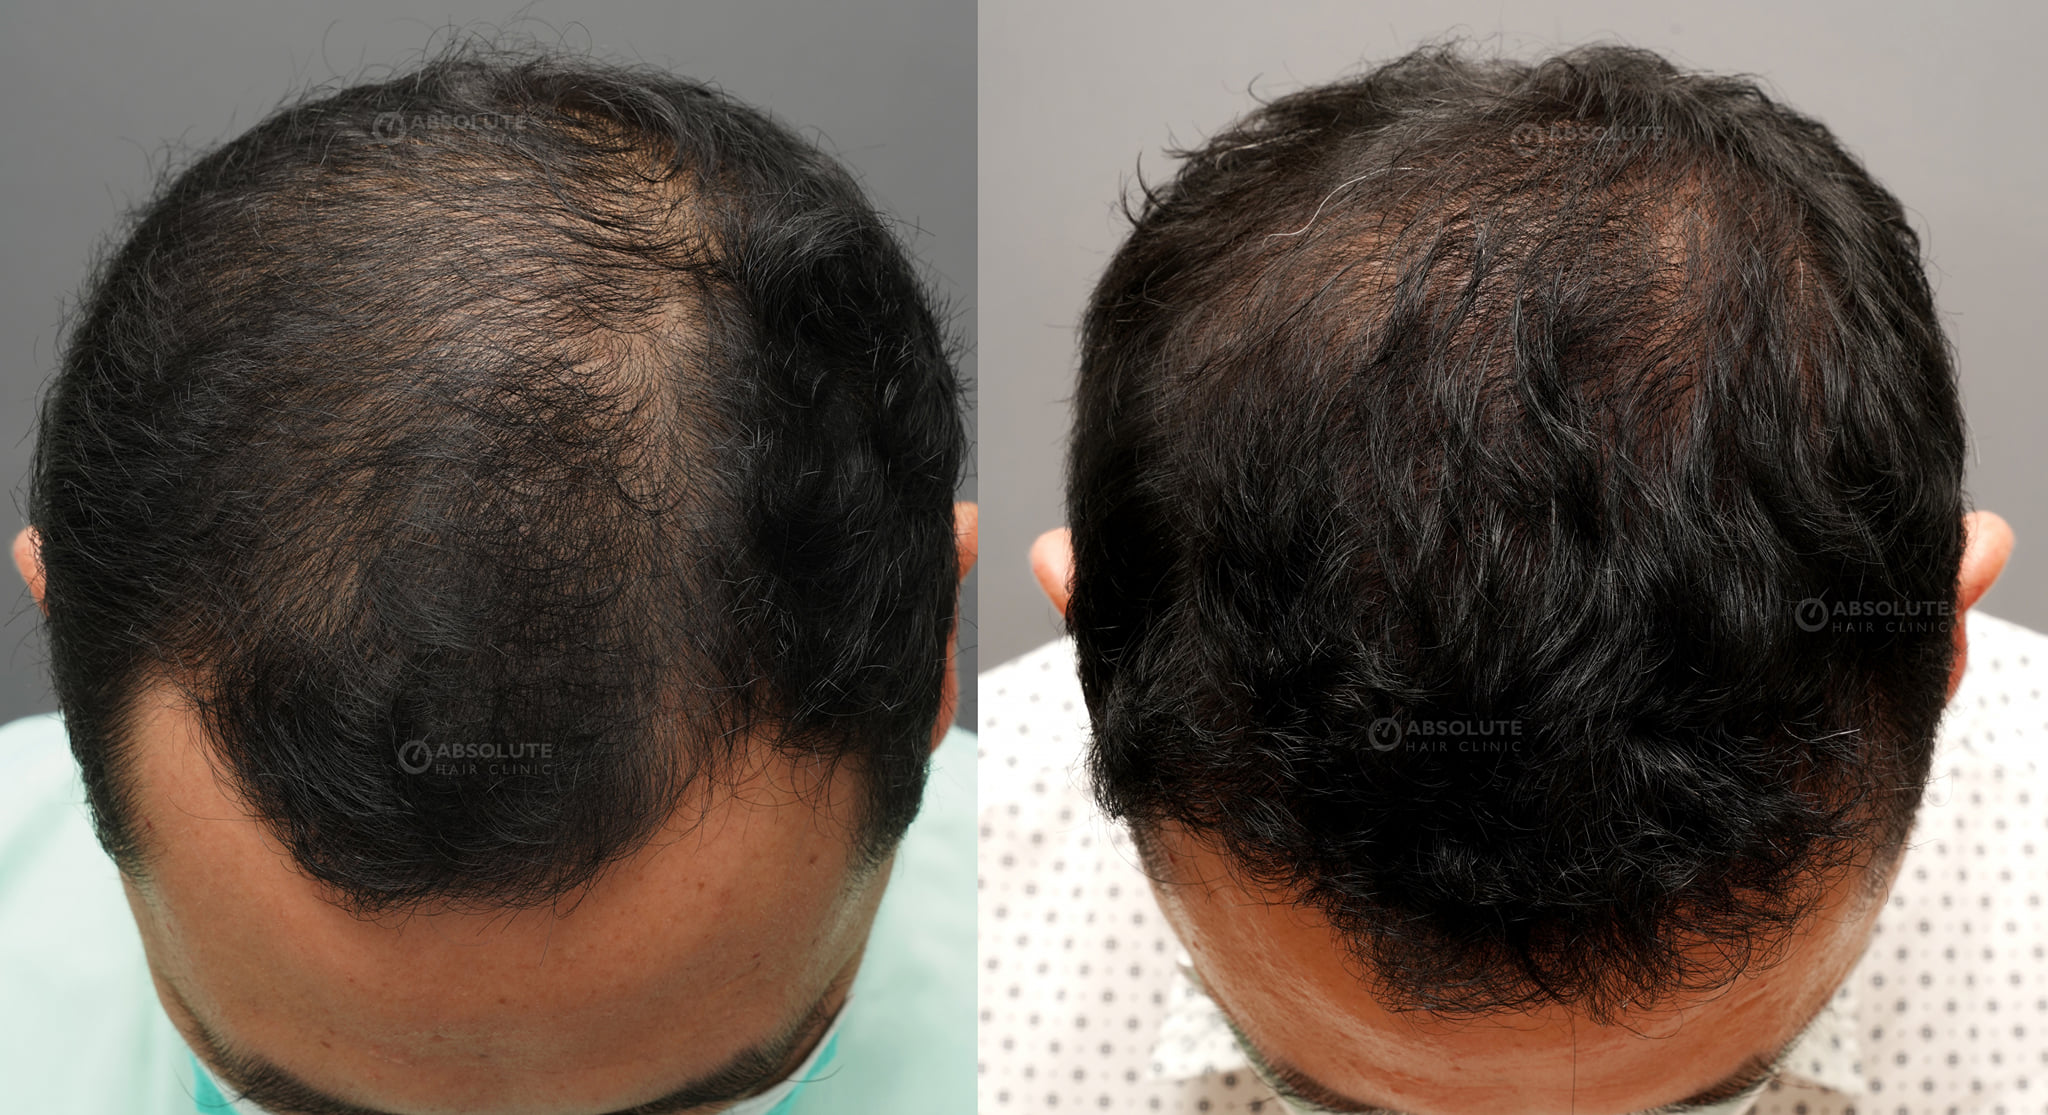 Cấy tóc FUE 3400 nang, kết quả sau 8 tháng - case 94